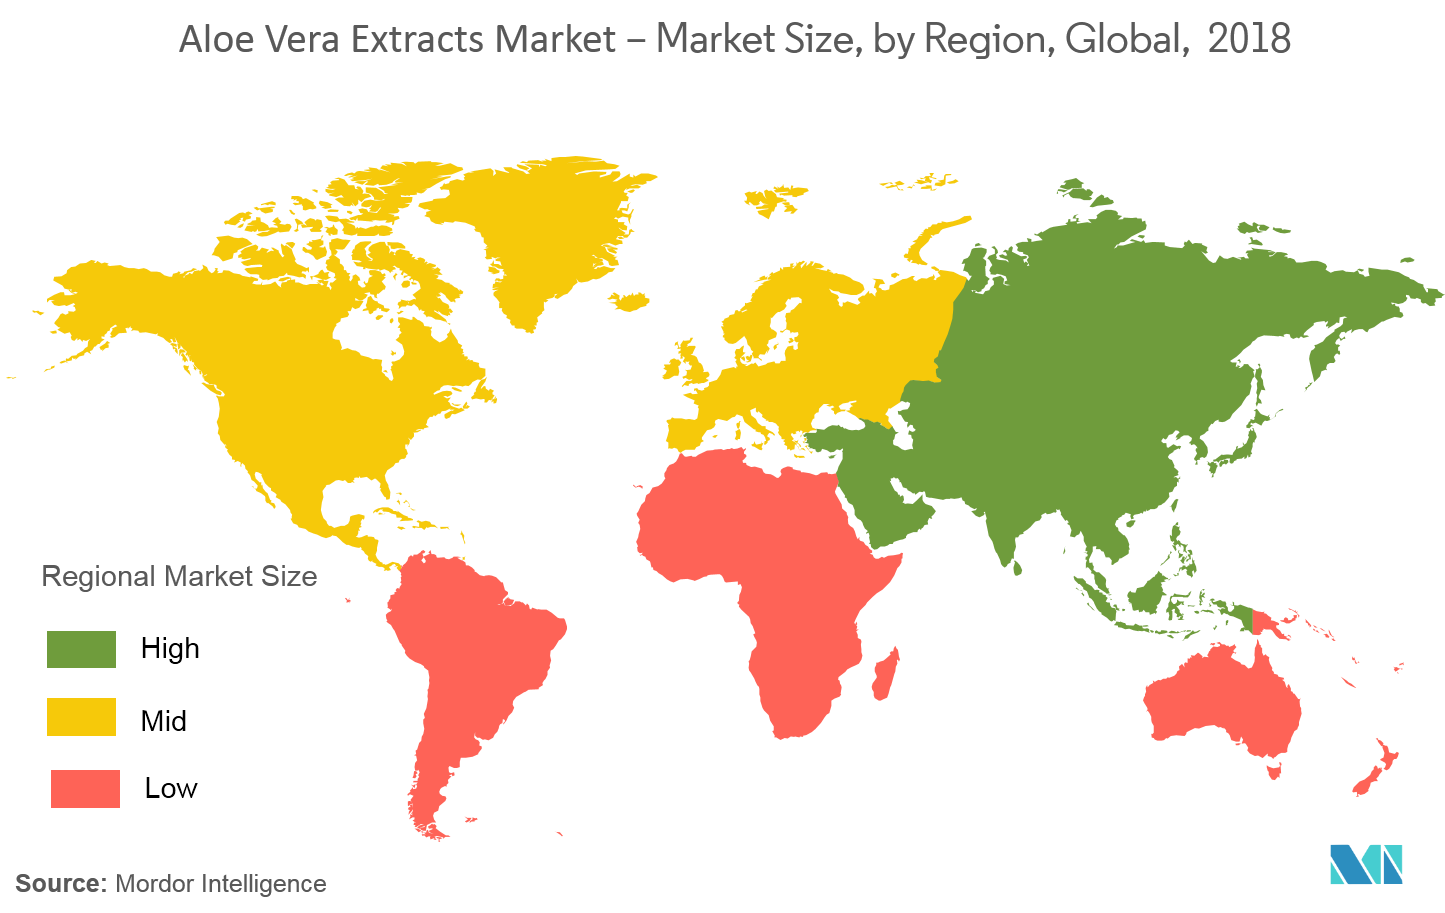 Mercado de extracto de aloe vera - Tamaño del mercado, por región, global, 2018